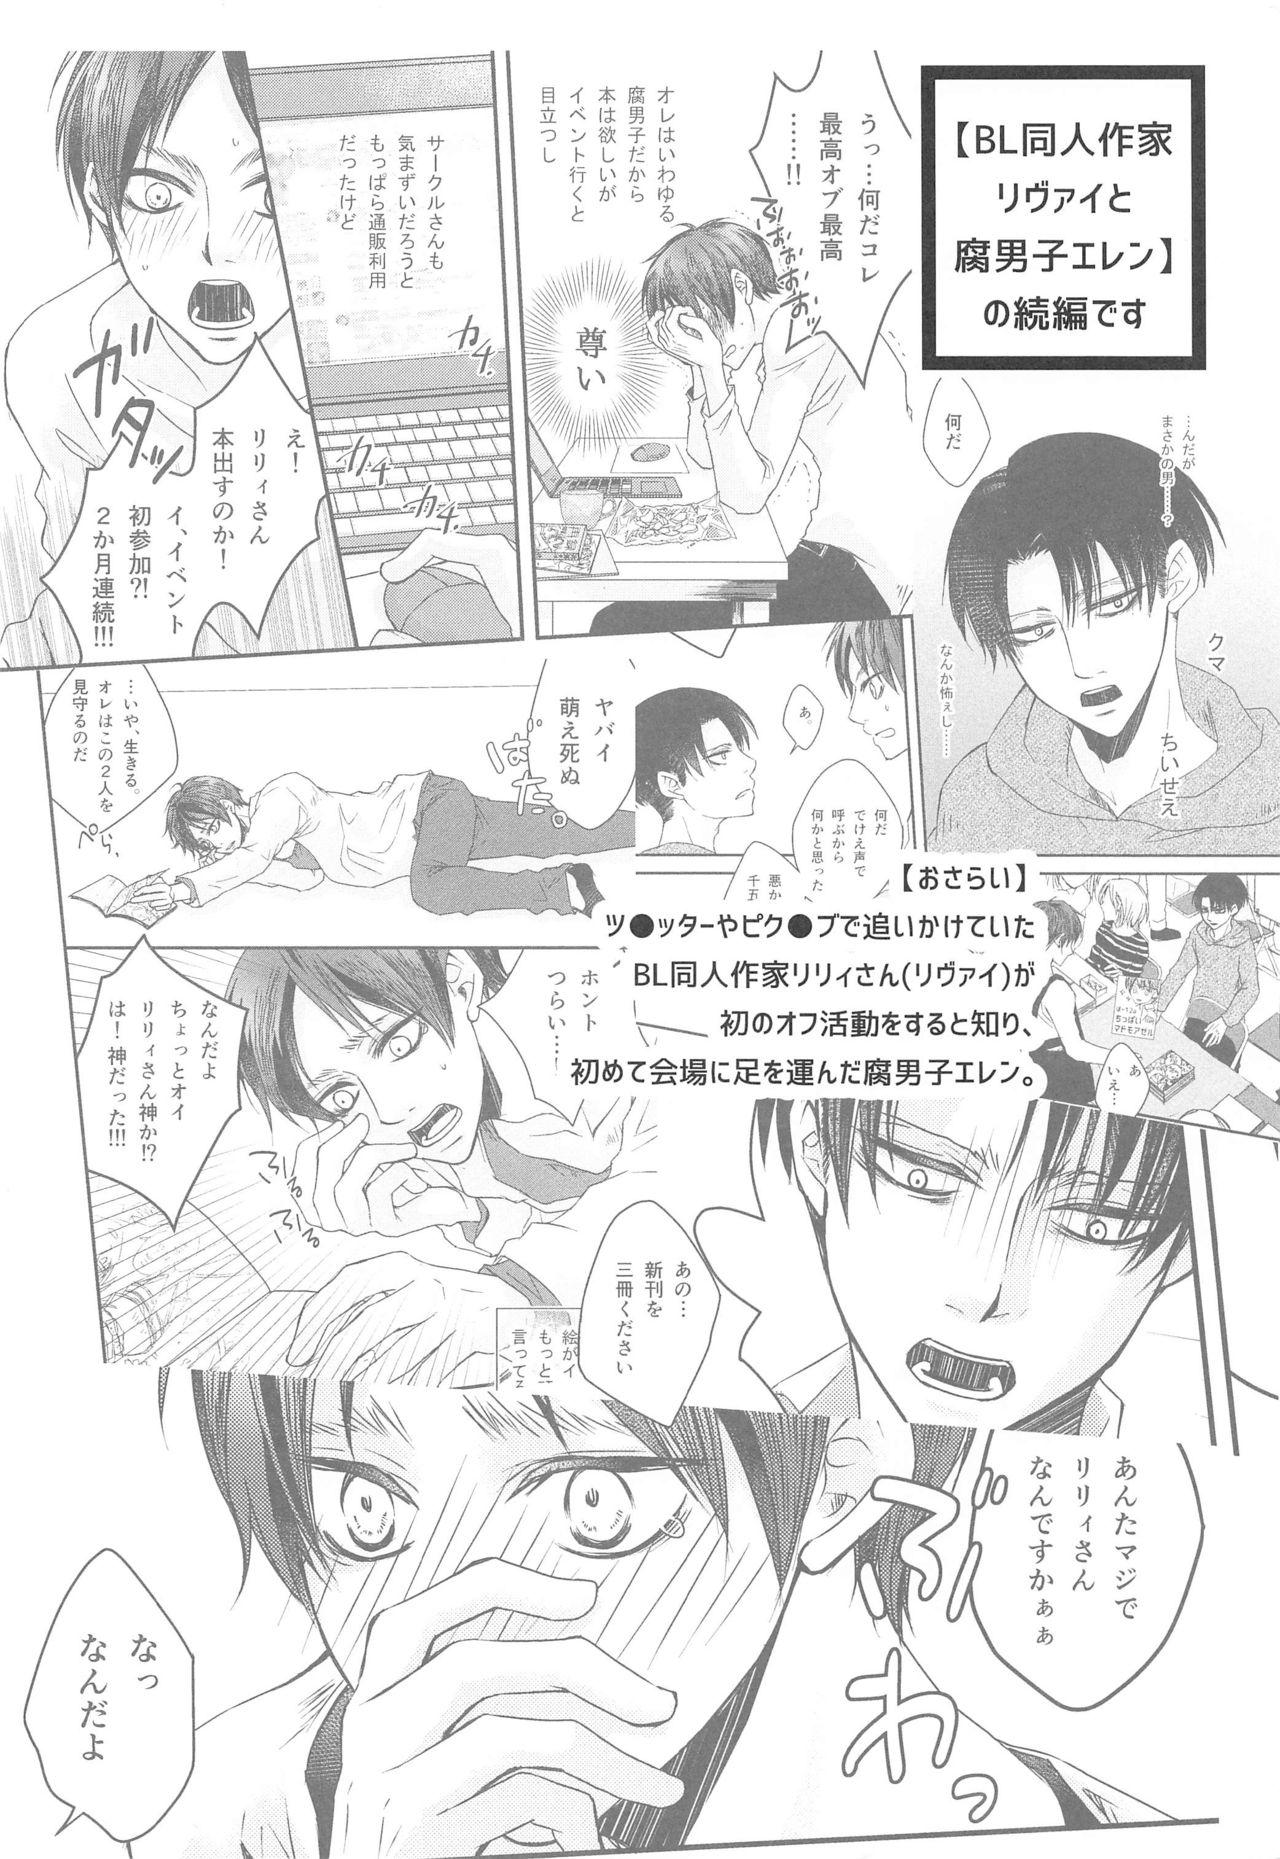 Masturbacion BL Doujin Sakka Levi no Kakumei - Shingeki no kyojin | attack on titan Real Amateurs - Page 3